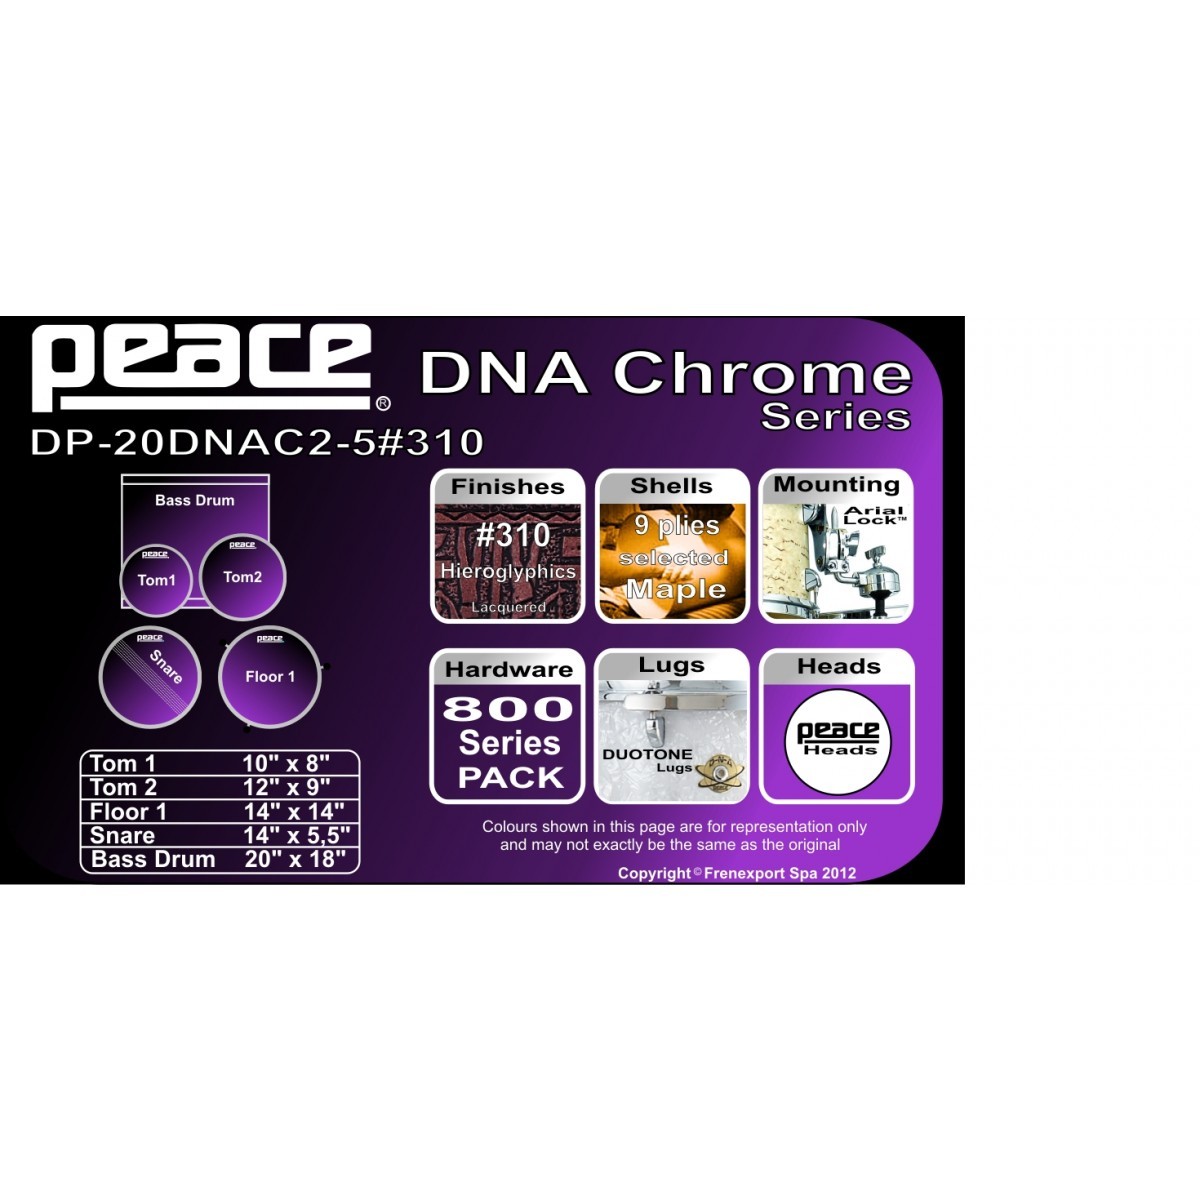 BATTERIA PEACE DNA DP-20DNAC2 OLD COPPER HW #310 HIEROGLYPHICS_3